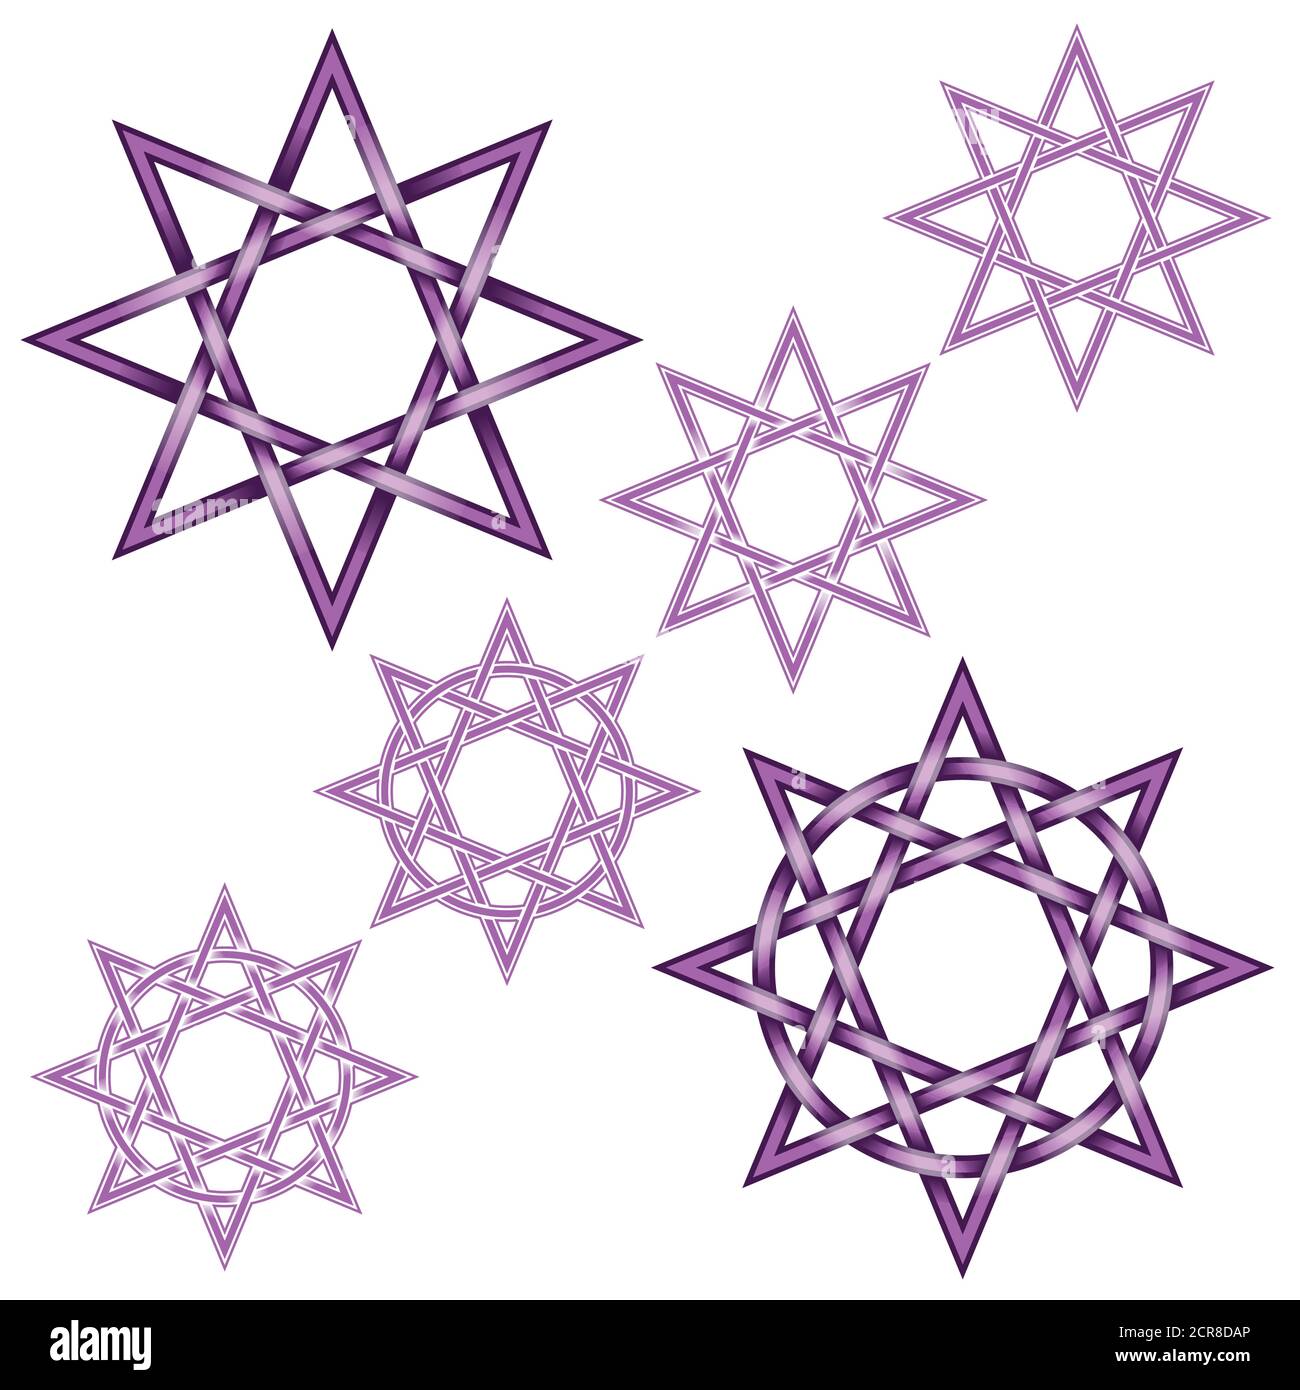 Vektor-Illustration von acht spitzen Stern mit Kreis verflochten, einfach zu bearbeiten und Farben zu ändern, alle auf weißem Hintergrund Stock Vektor